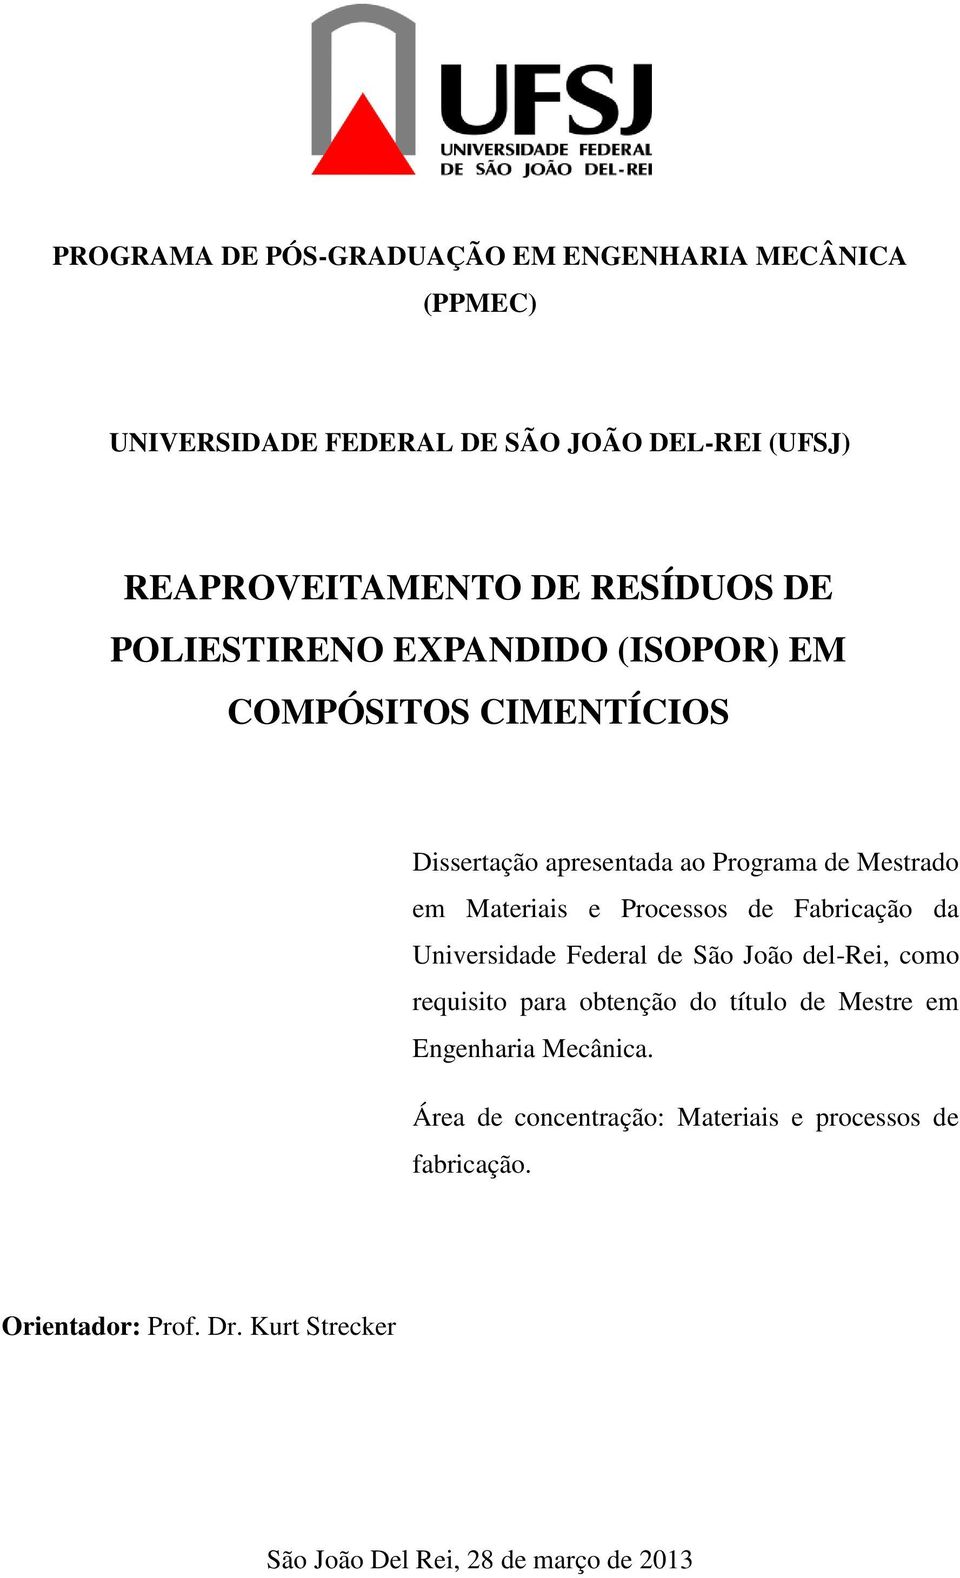 Processos de Fabricação da Universidade Federal de São João del-rei, como requisito para obtenção do título de Mestre em Engenharia